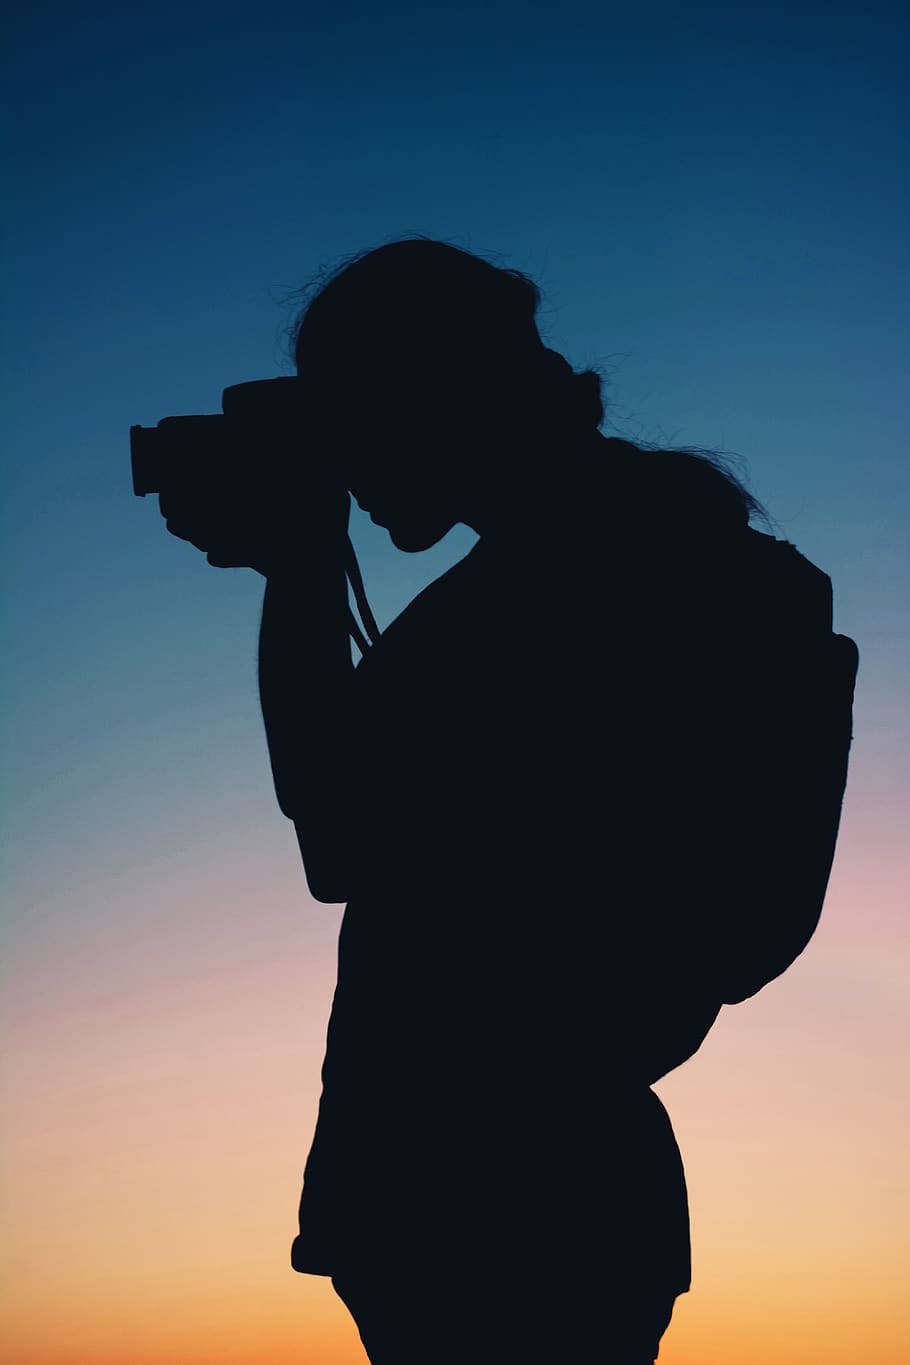 canon camera silhouette